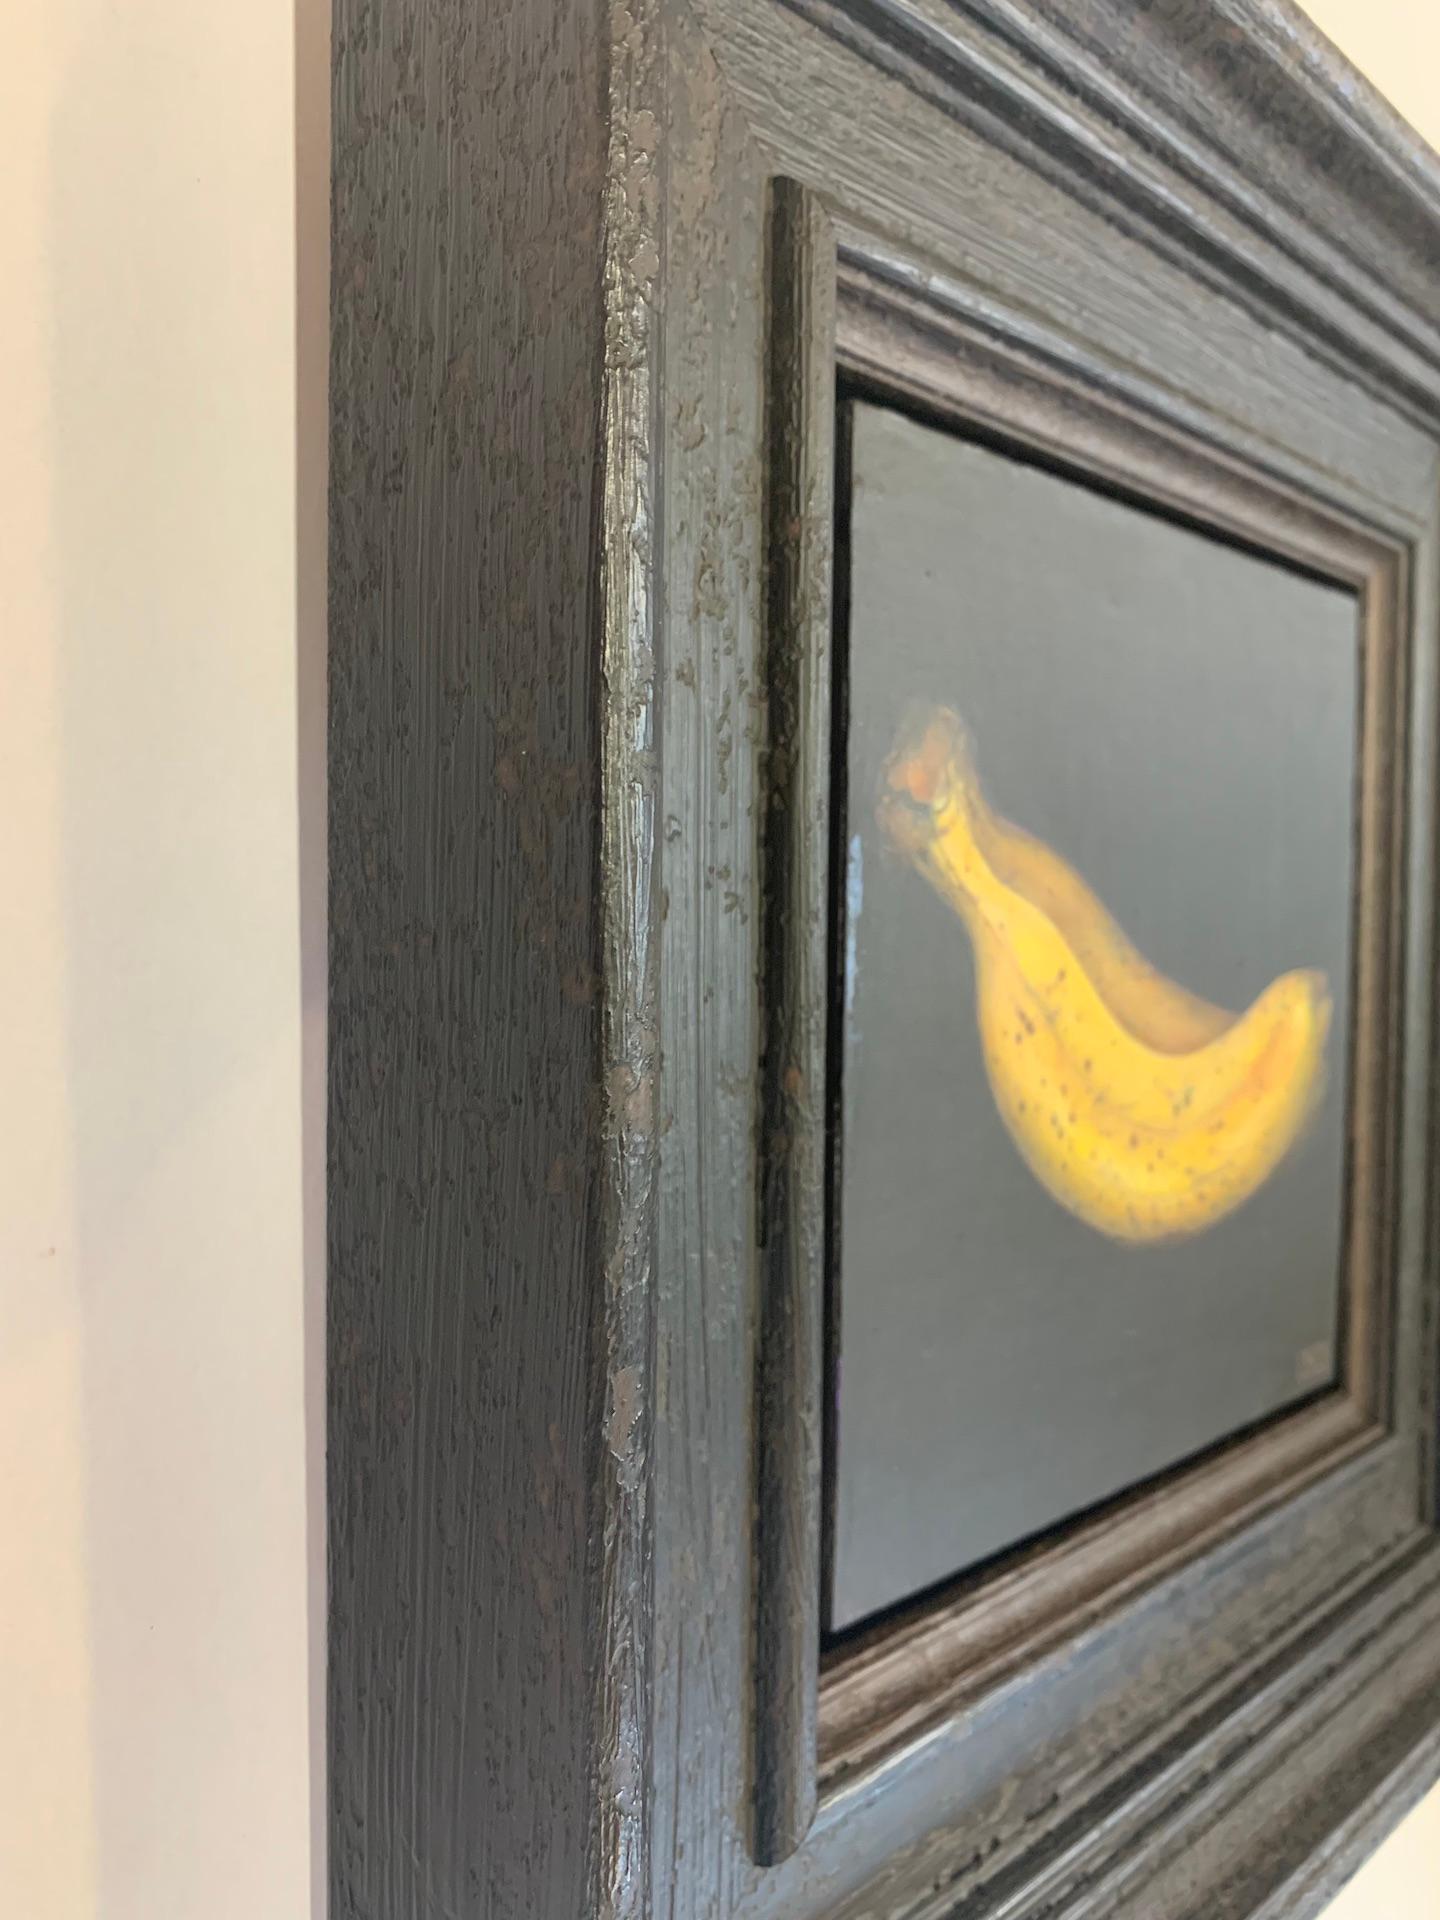 Yellow Banana est une peinture à l'huile sur toile originale signée et encadrée de Dani Humberstone représentant une nature morte réaliste d'une banane jaune sur un fond noir dans un cadre noir.

Informations complémentaires :
Yellow Banana par Dani